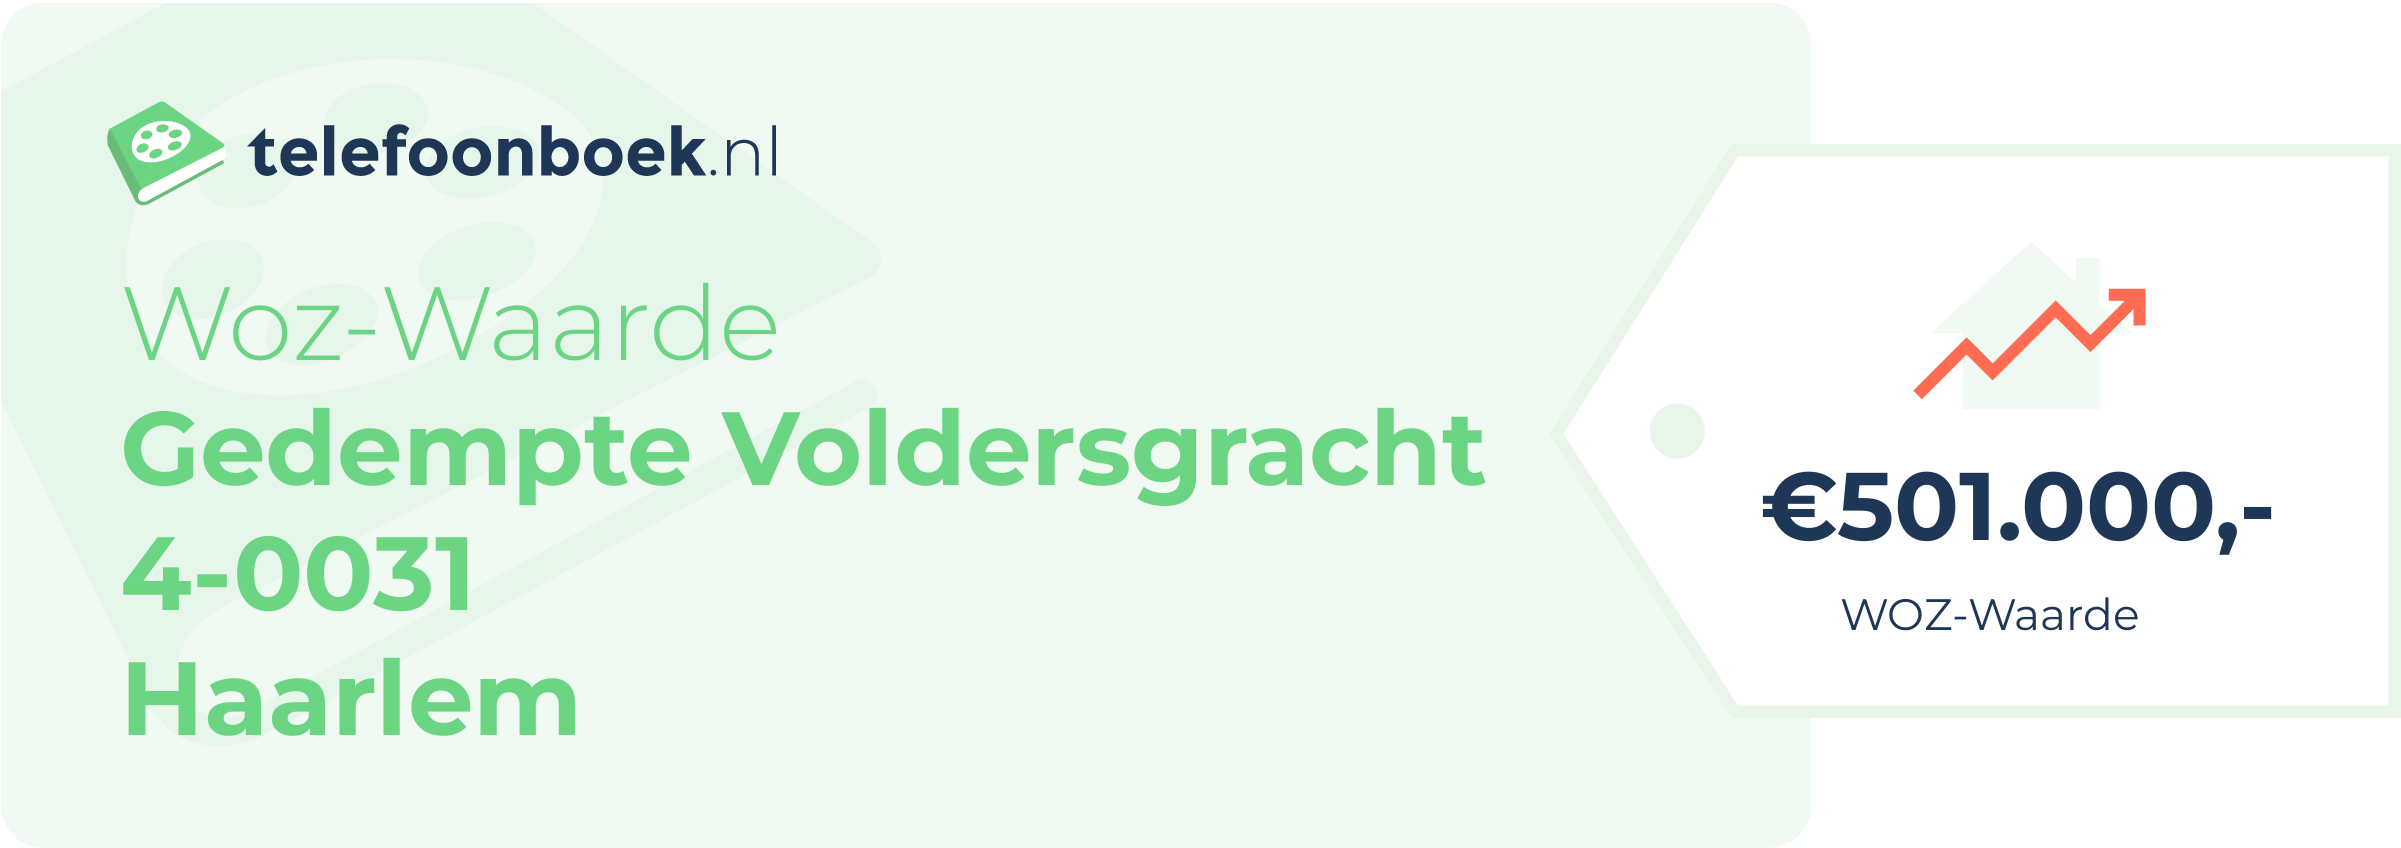 WOZ-waarde Gedempte Voldersgracht 4-0031 Haarlem